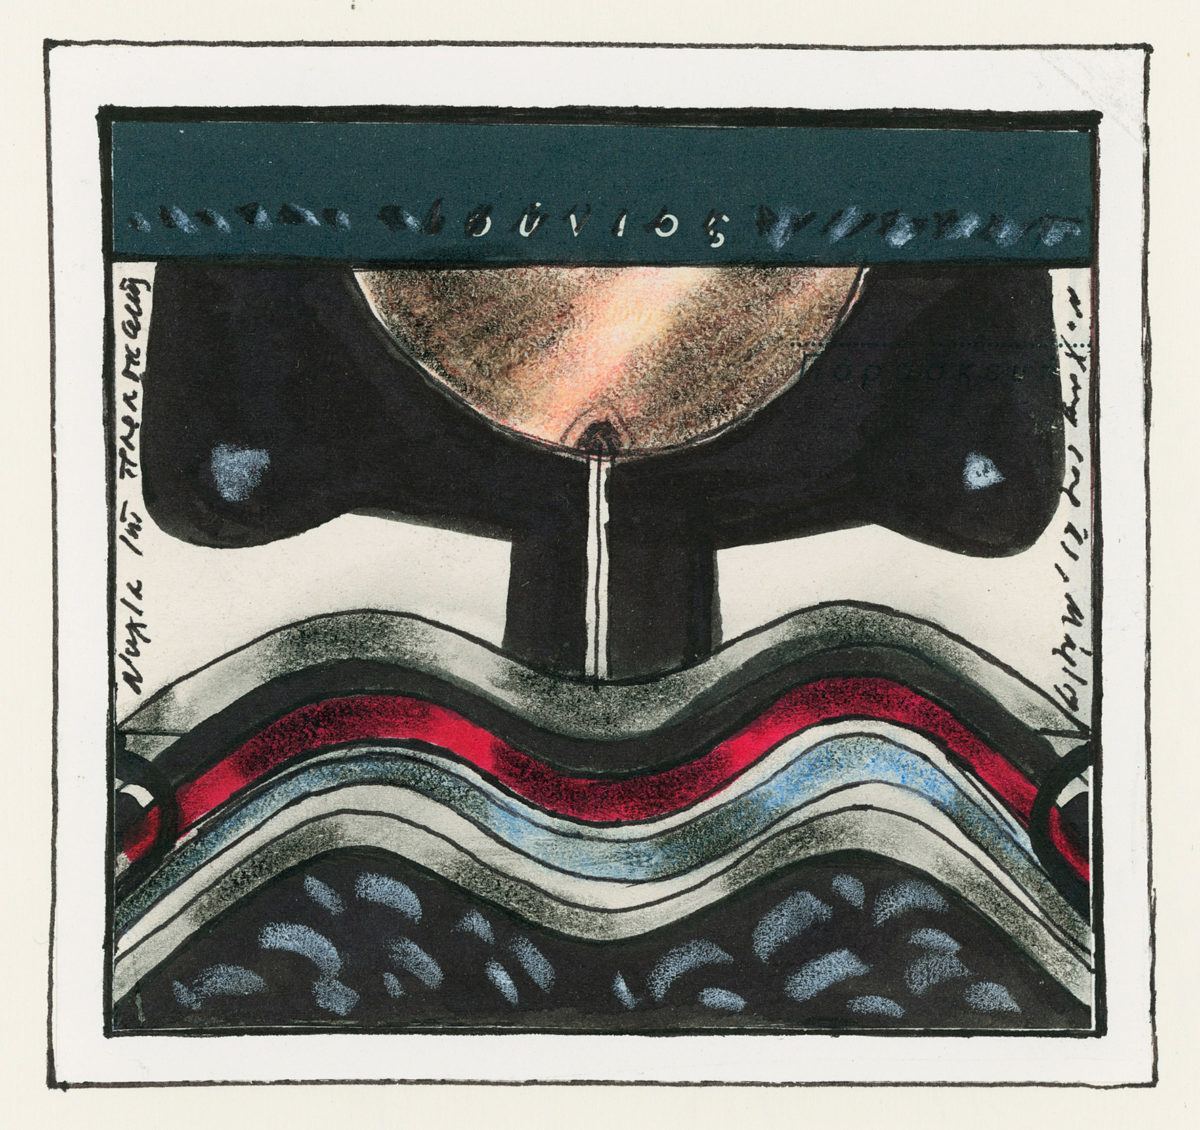 Νίκος Χουλιαράς, «Χωρίς τίτλο», περίπου 1996. Σινική μελάνη, υδρόχρωμα, ξυλομπογιά, υαλογράφος και μαρκαδοράκι σε φύλλο ημερολογίου κολλημένο σε χαρτί, 9x10 εκ. Συλλογή Σοφίας Χουλιαρά.